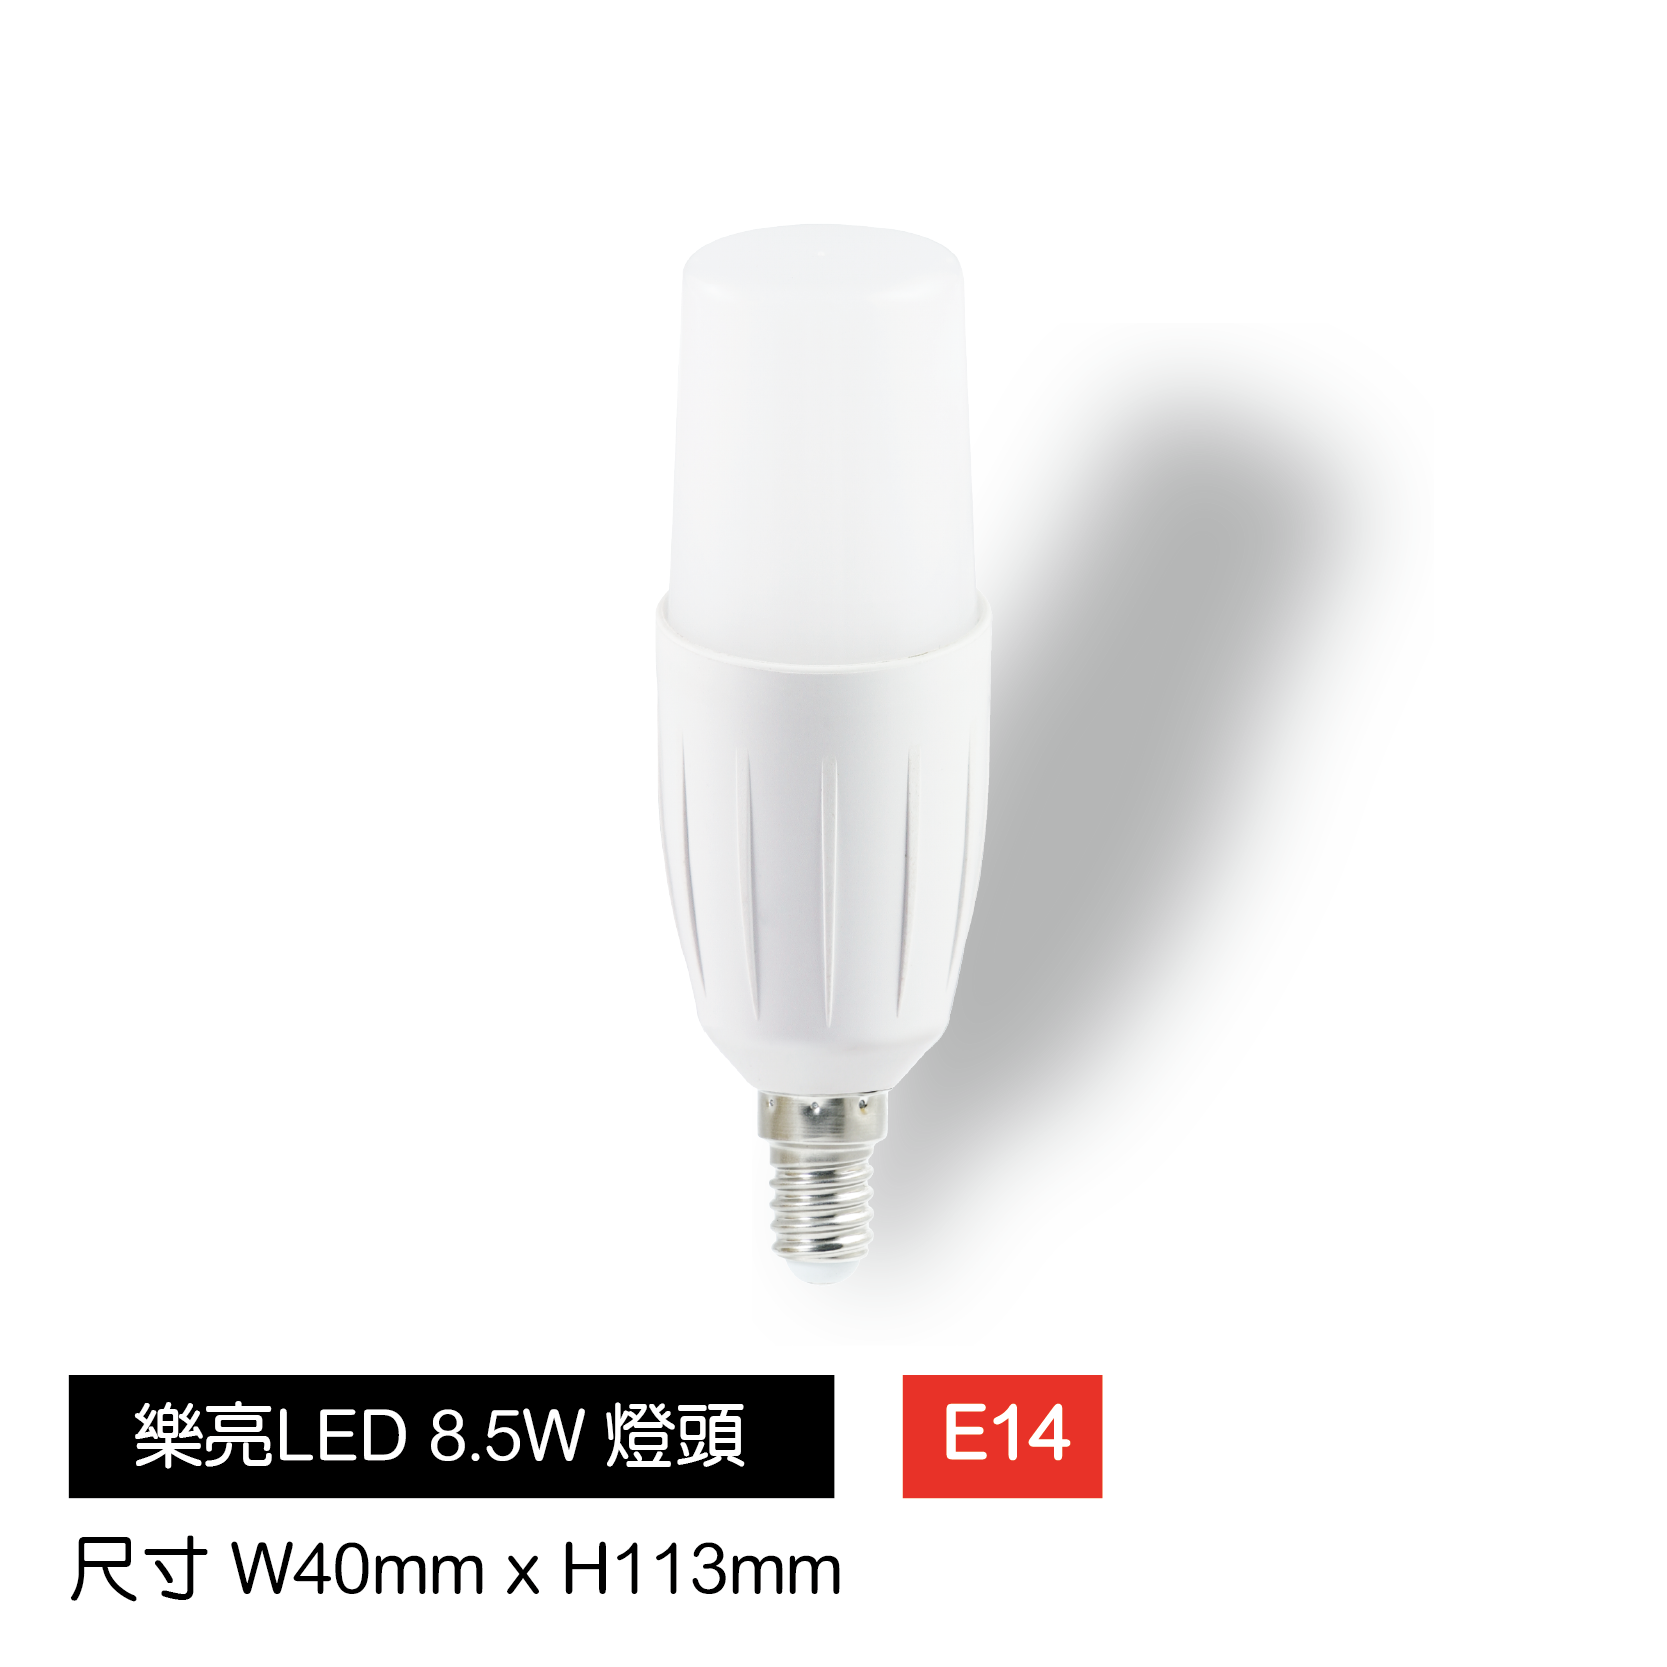 LED-8.5W小冰兵燈泡-E14